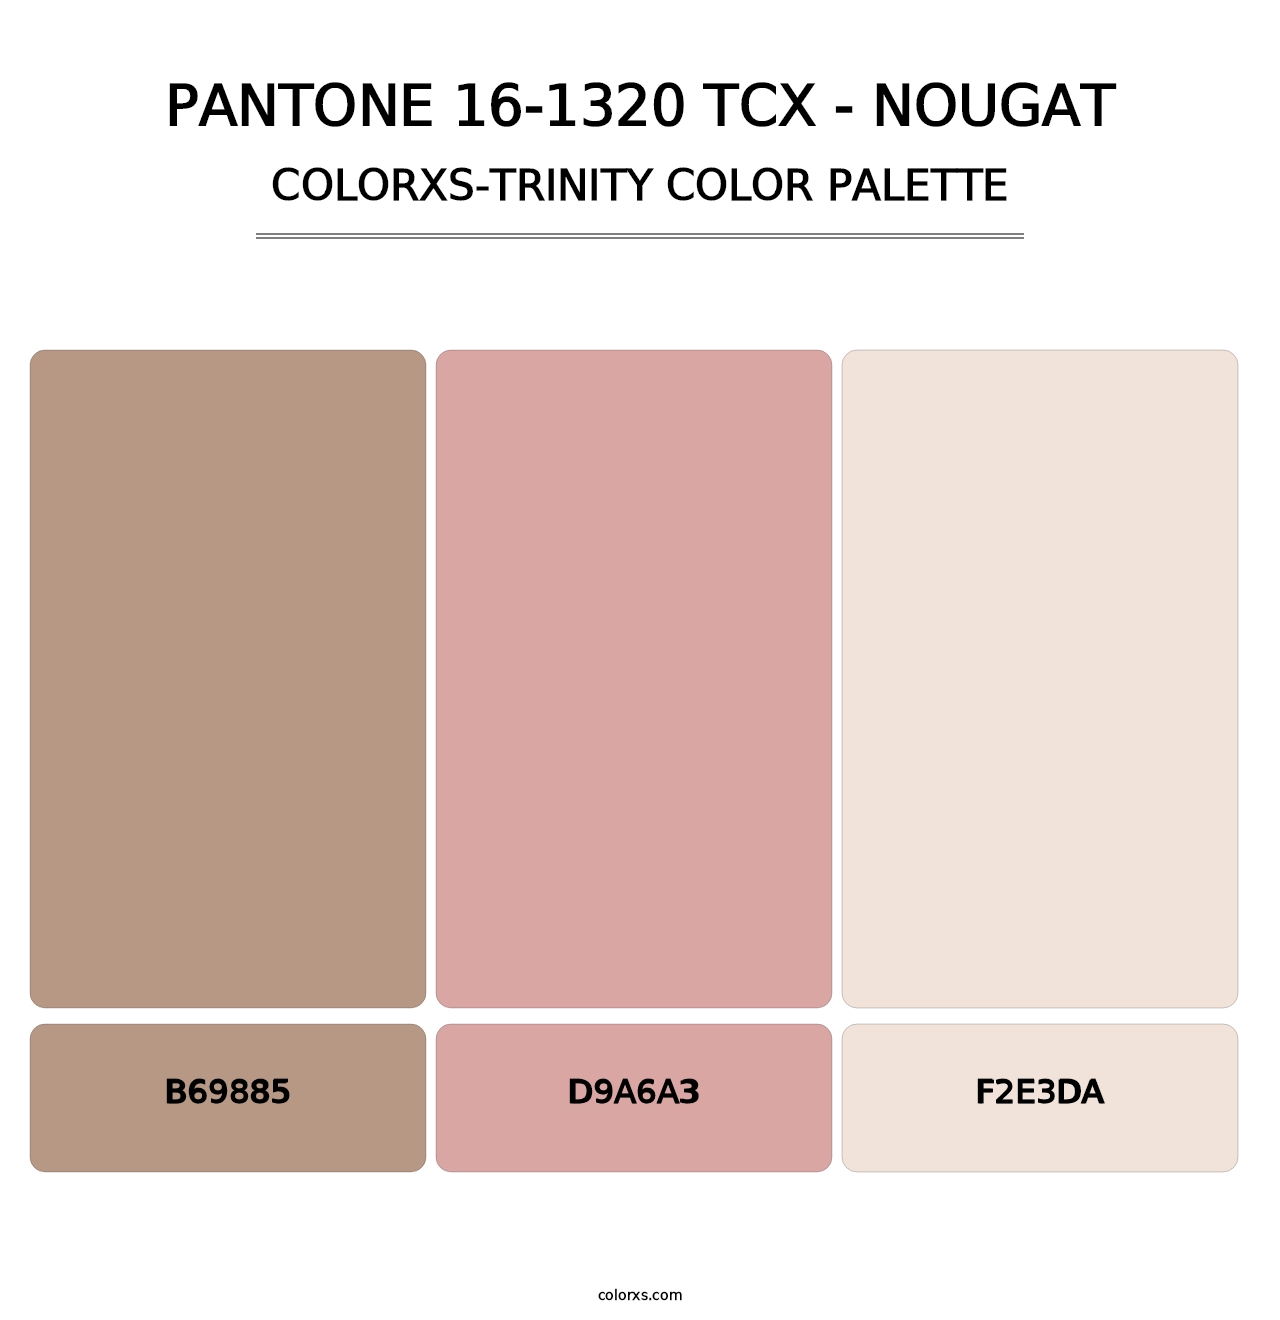 PANTONE 16-1320 TCX - Nougat - Colorxs Trinity Palette